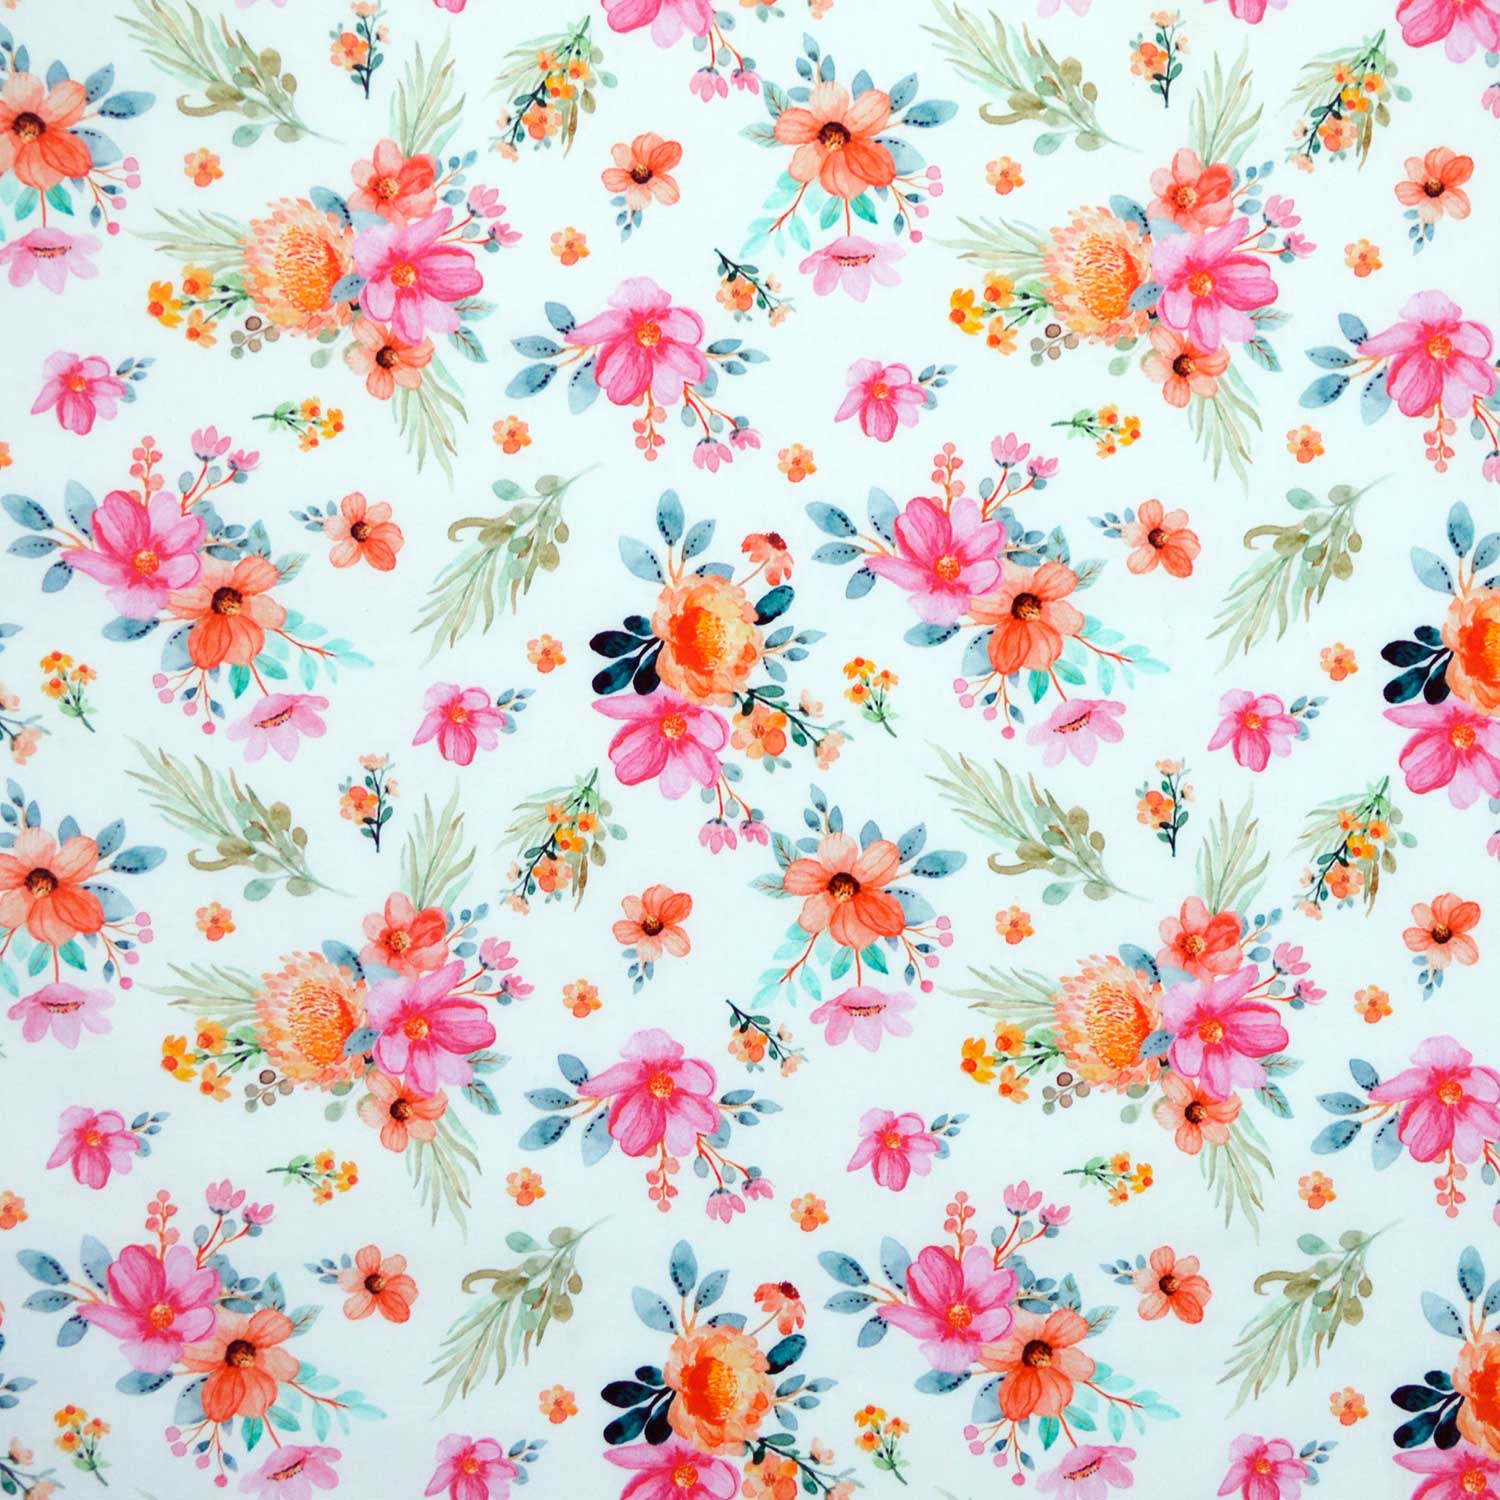 tecido-tricoline-estampado-digital-floral-primavera-della-aviamentos-tecidos-caldeira-grande-11051